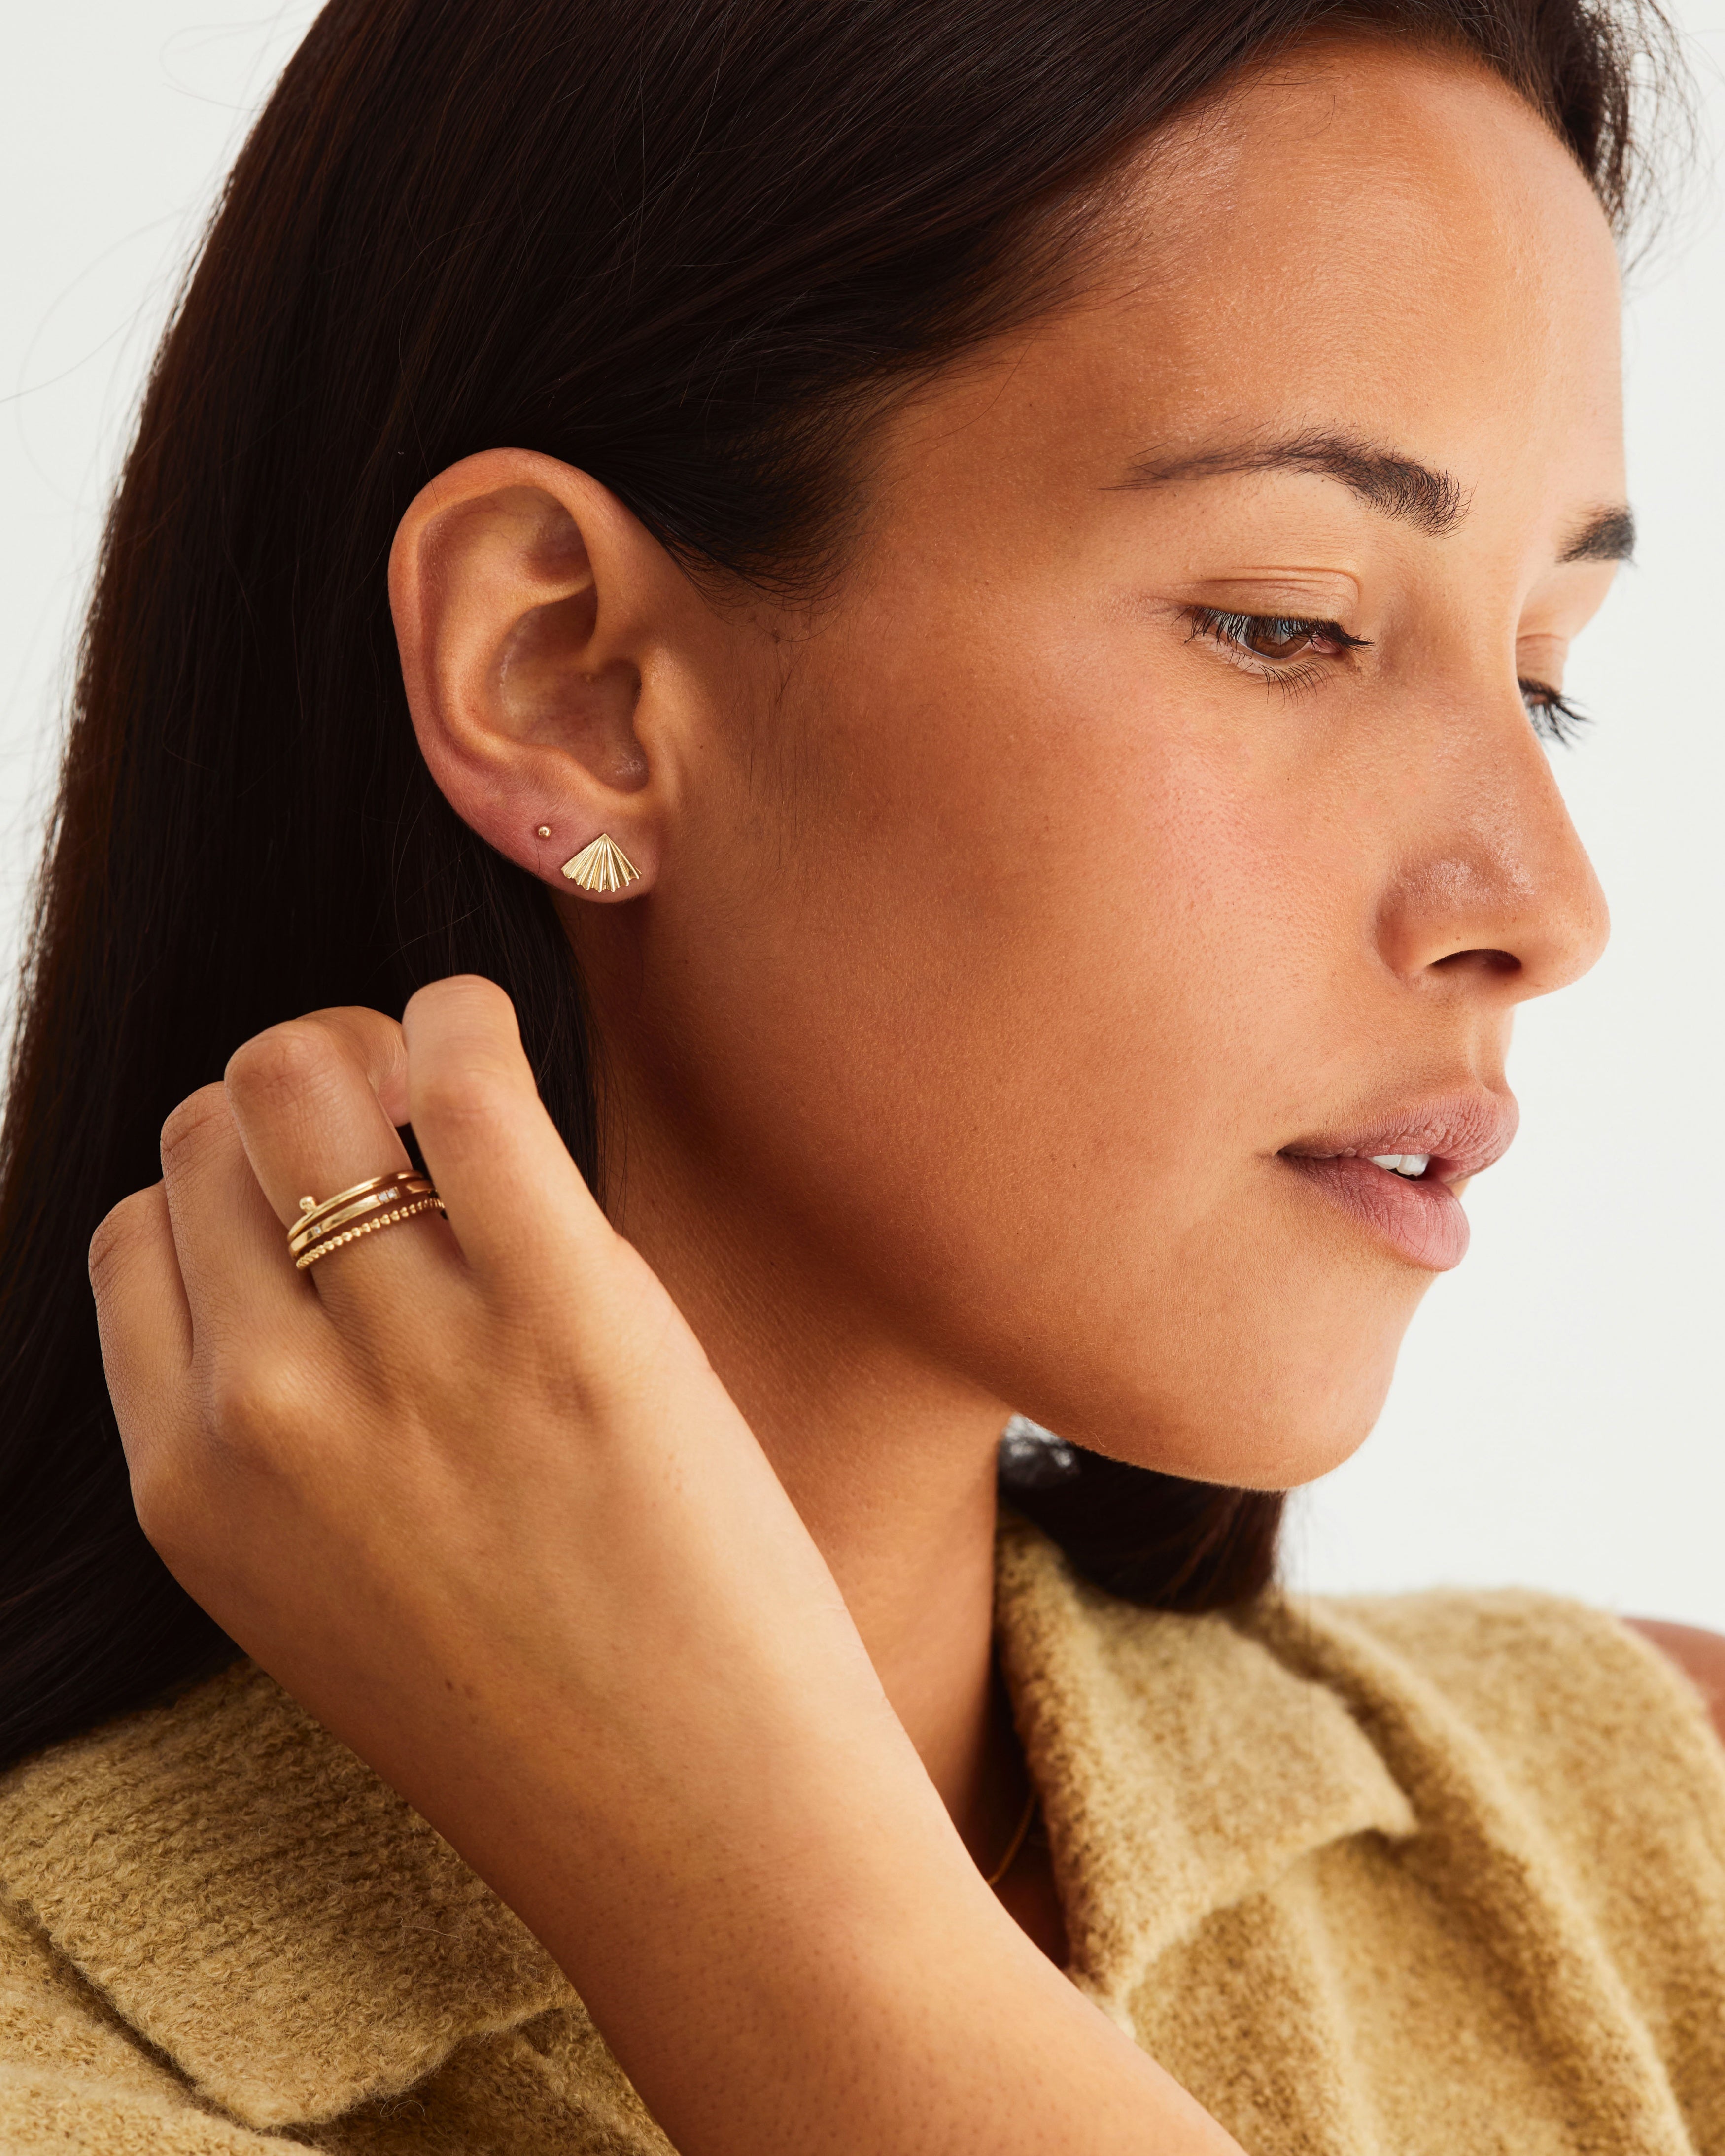 Woman wearing a gold fan earring